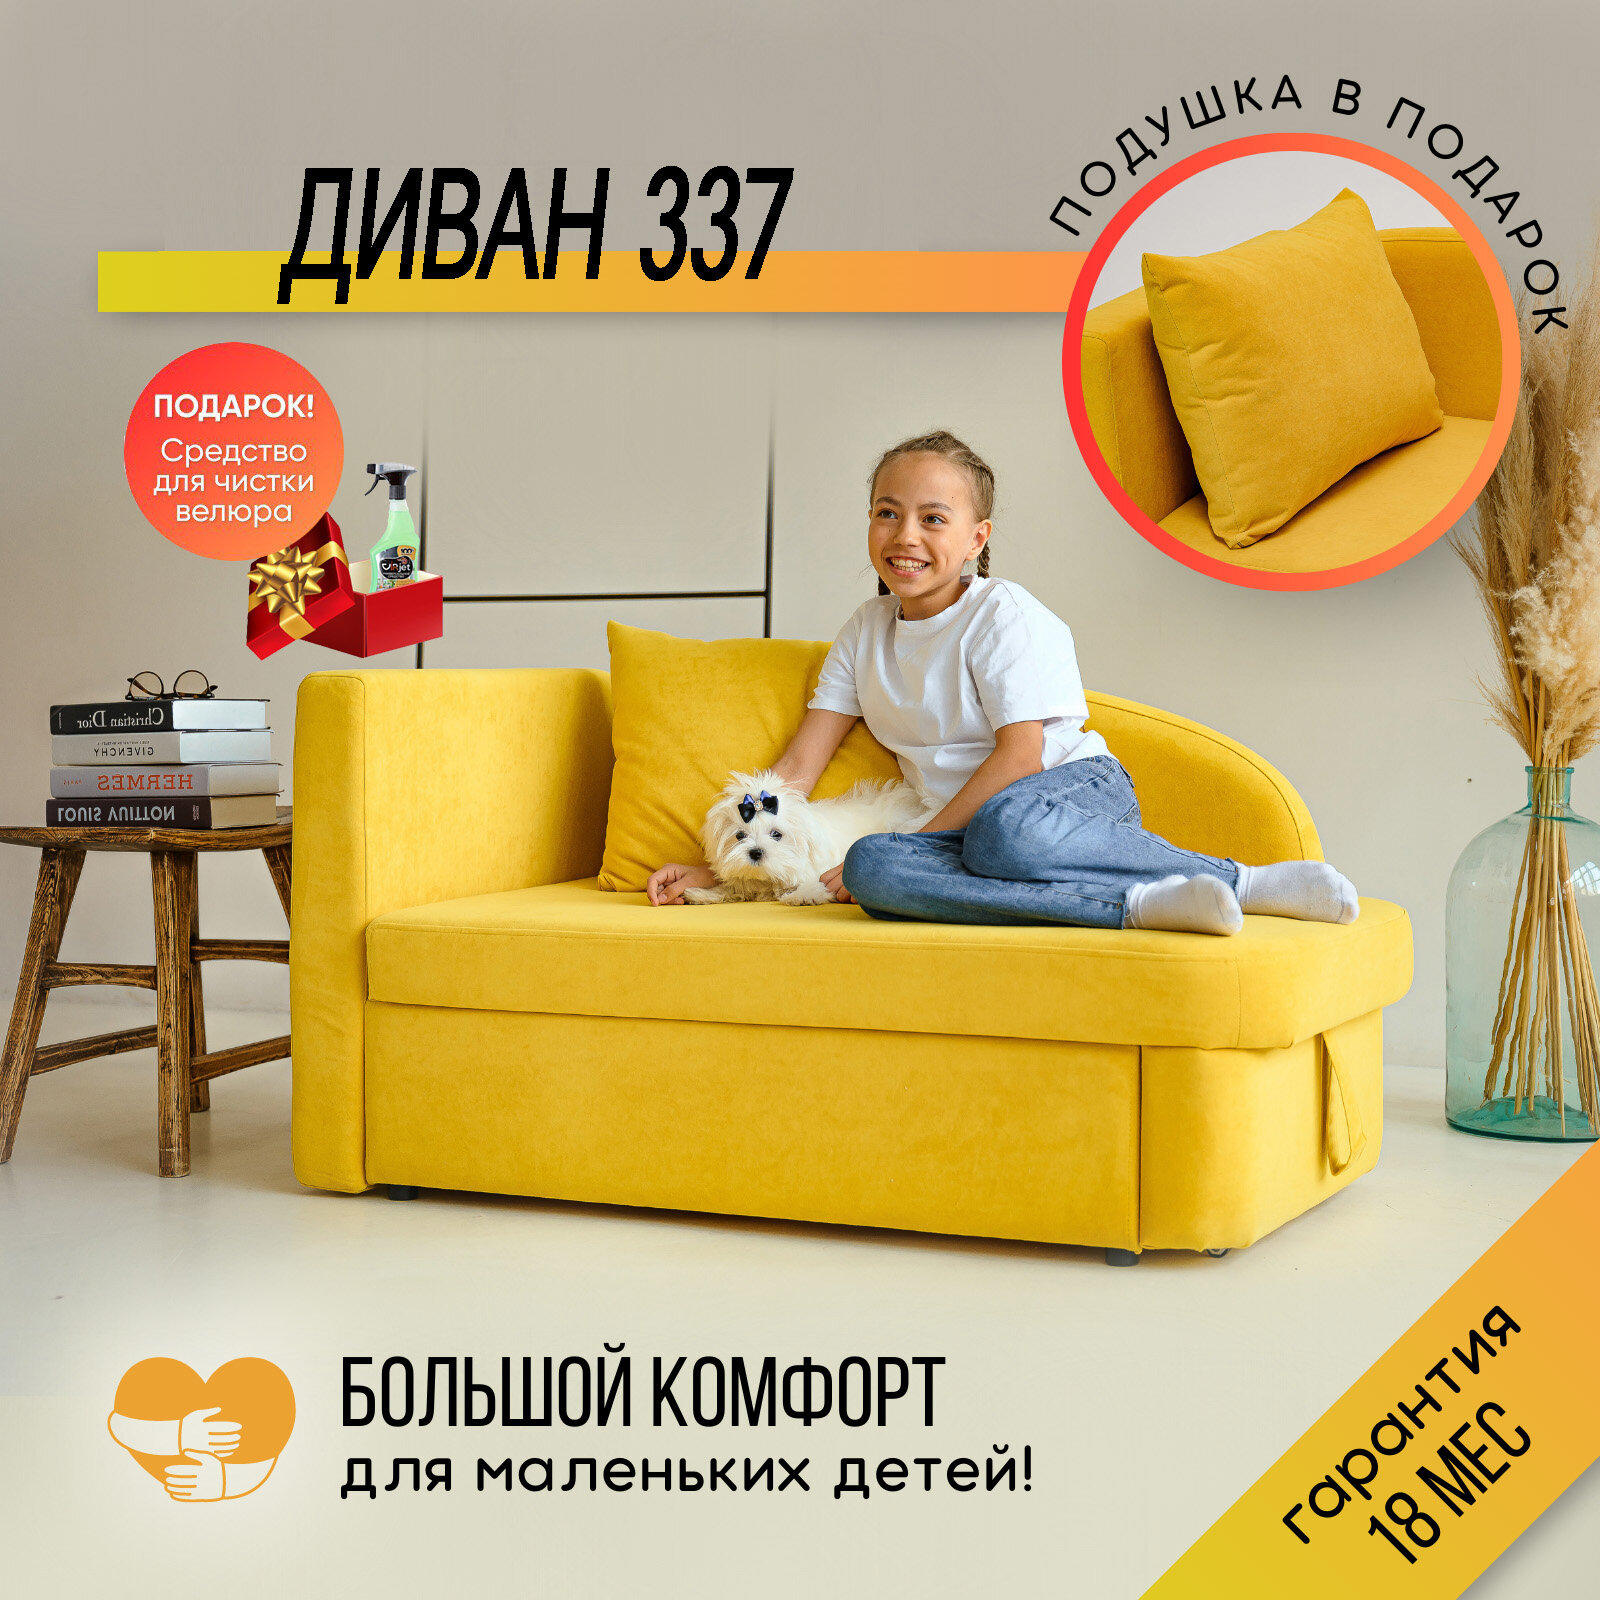 Детский диван-кровать раскладной, 337 диван левая ориентация, цвет желтый 130х73х67 см